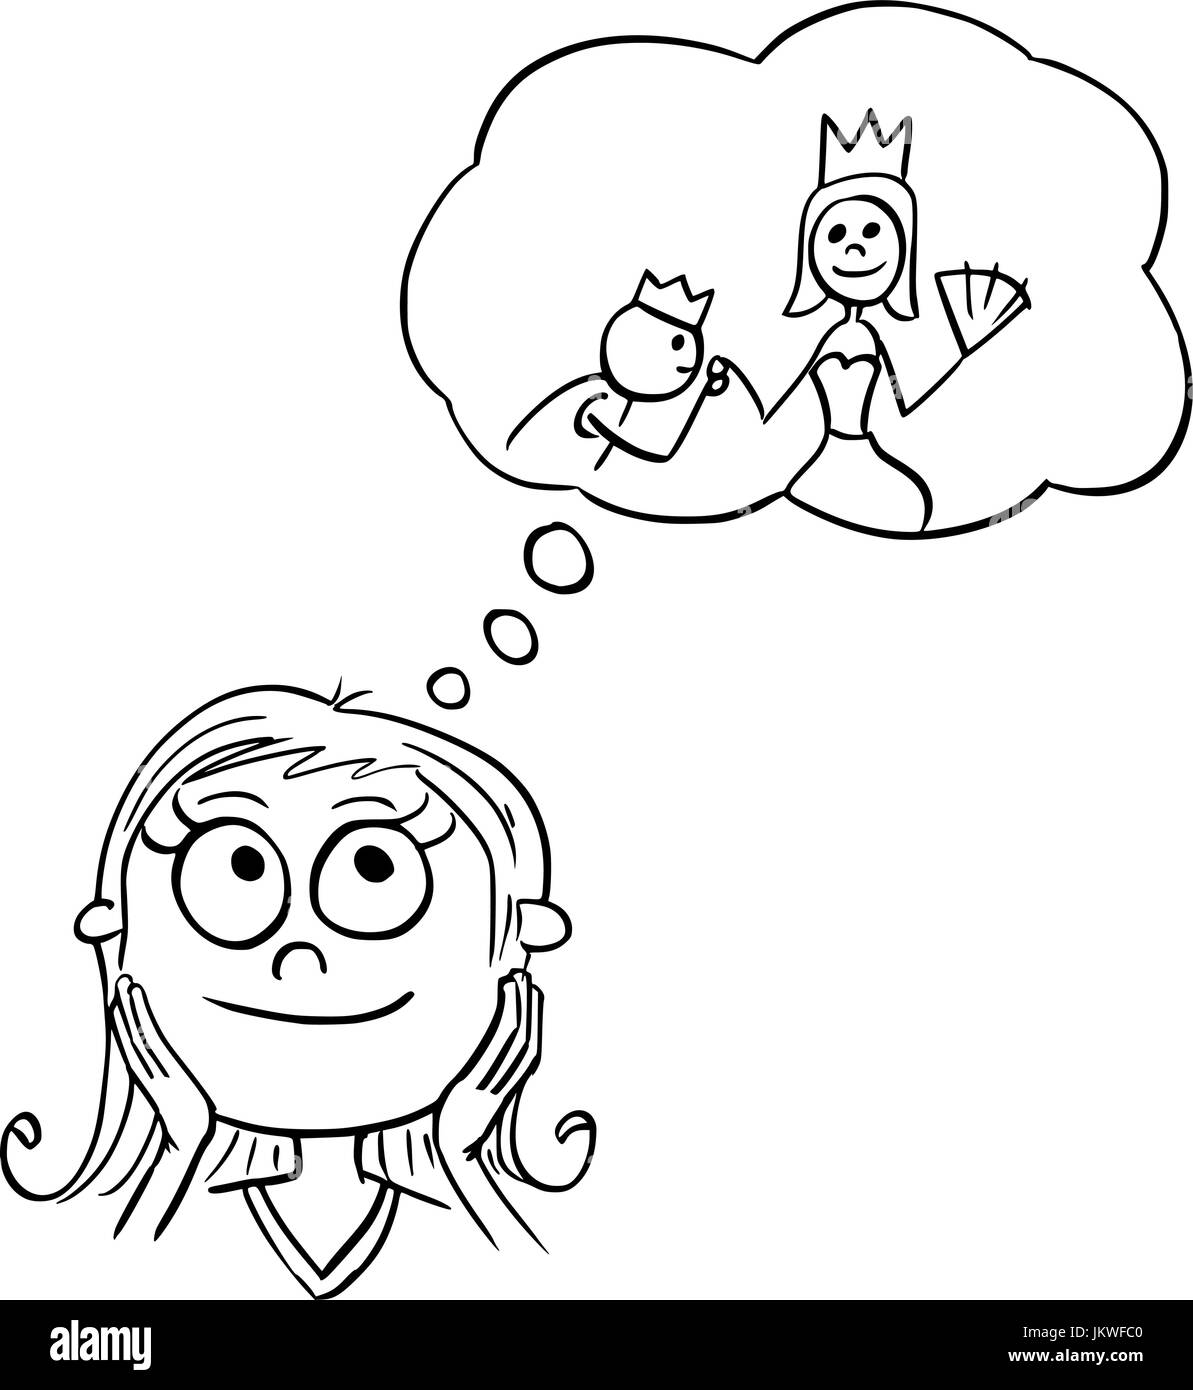 Disegno a mano cartoon illustrazione vettoriale di una ragazza sognare di vivere di fiaba princess. Illustrazione Vettoriale